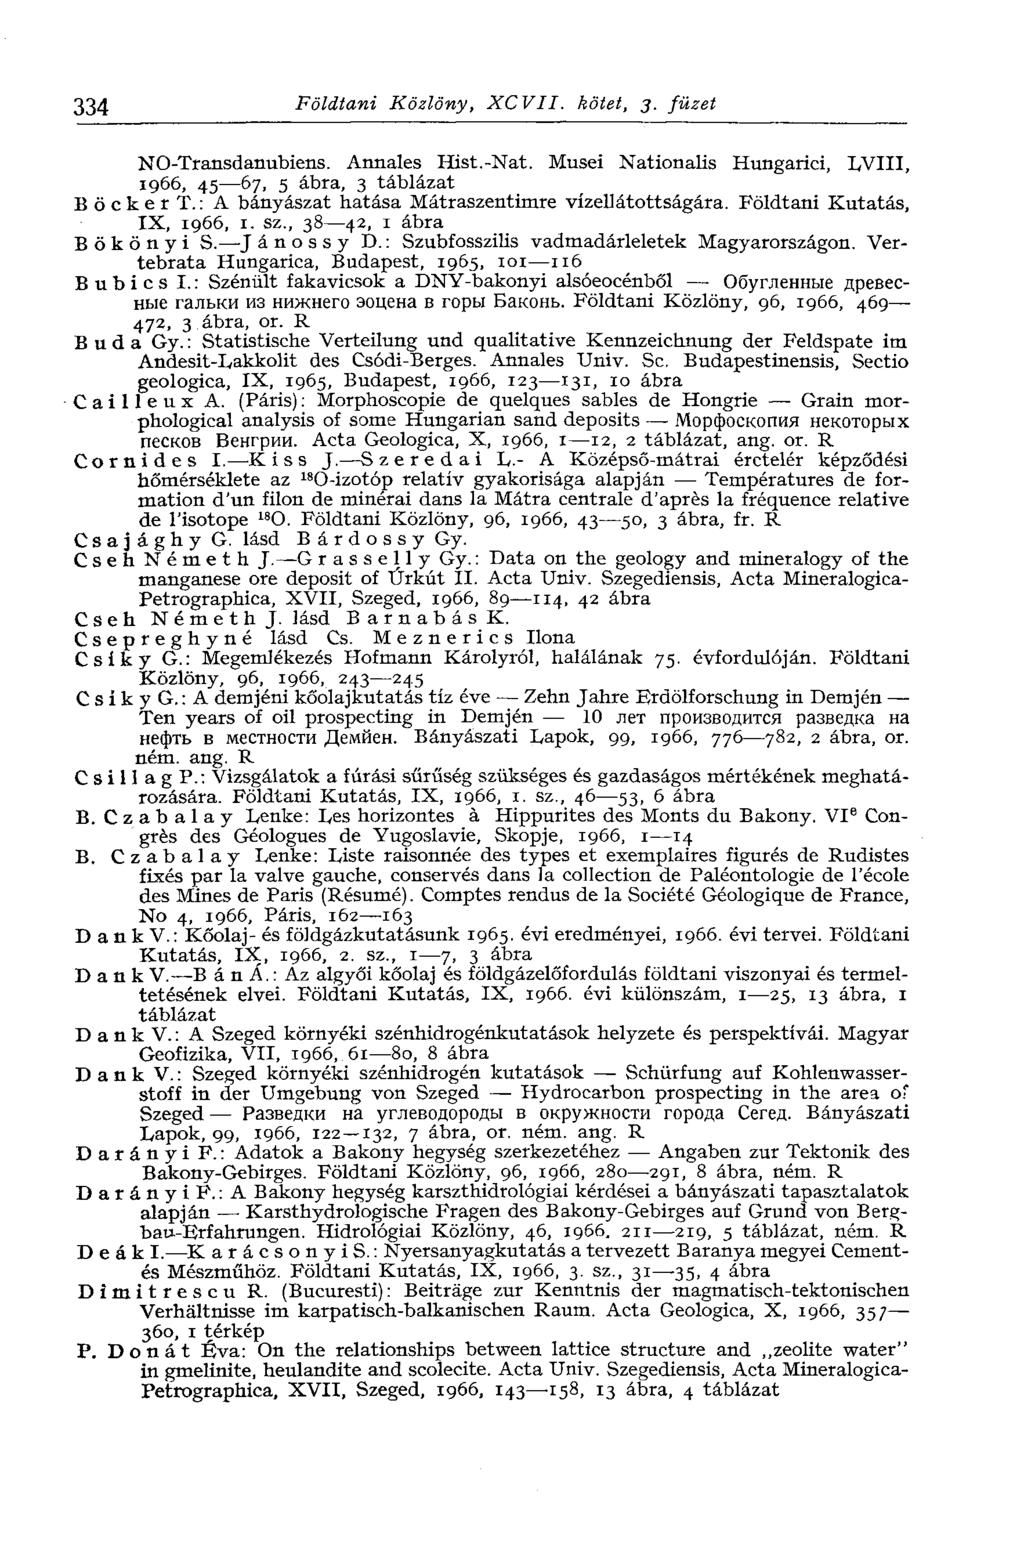 334 Földtani Közlöny, XCVII. kötet, j. füzet NO-Transdanubiens. Annales Hist.-Nat. Musei Nationalis Hungarici, LVIII, 1966, 45 67, 5 ábra, 3 táblázat BöckerT.